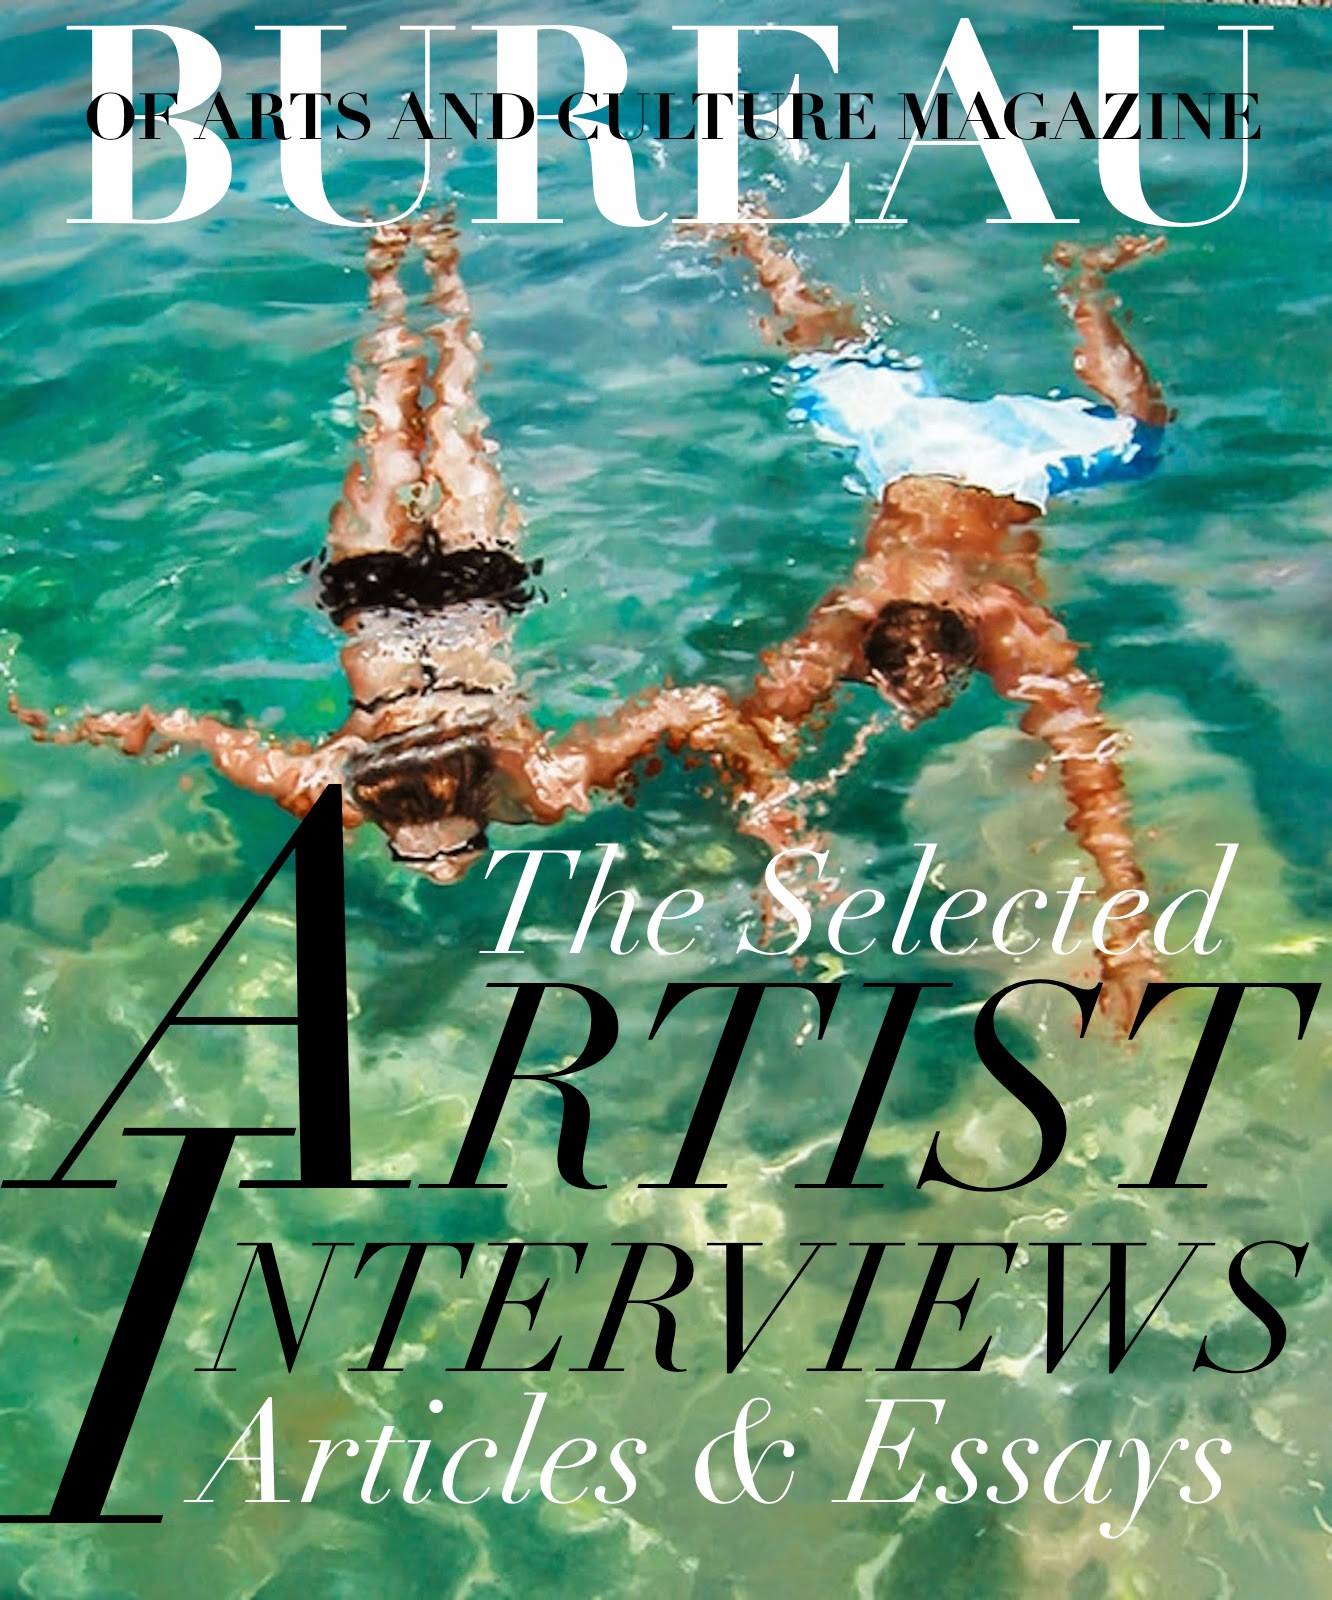 READ BUREAU ARTIST INTERVIEWS